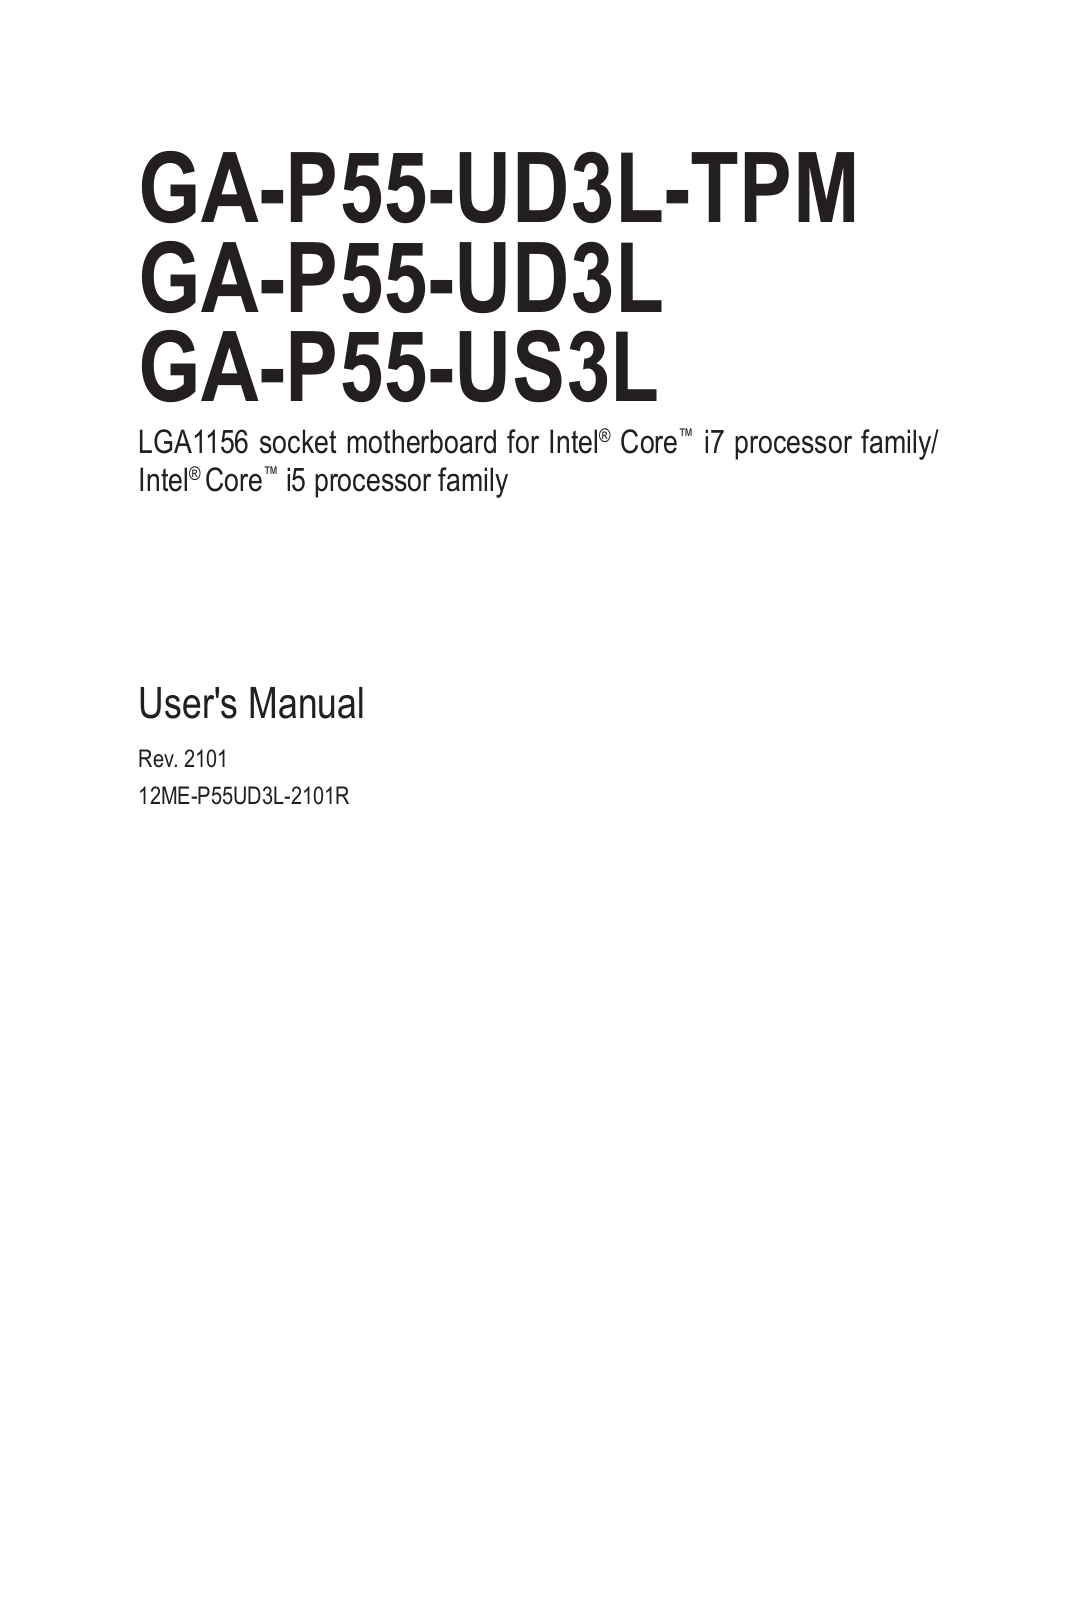 Gigabyte GA-P55-US3L (rev. 2.1) User Manual